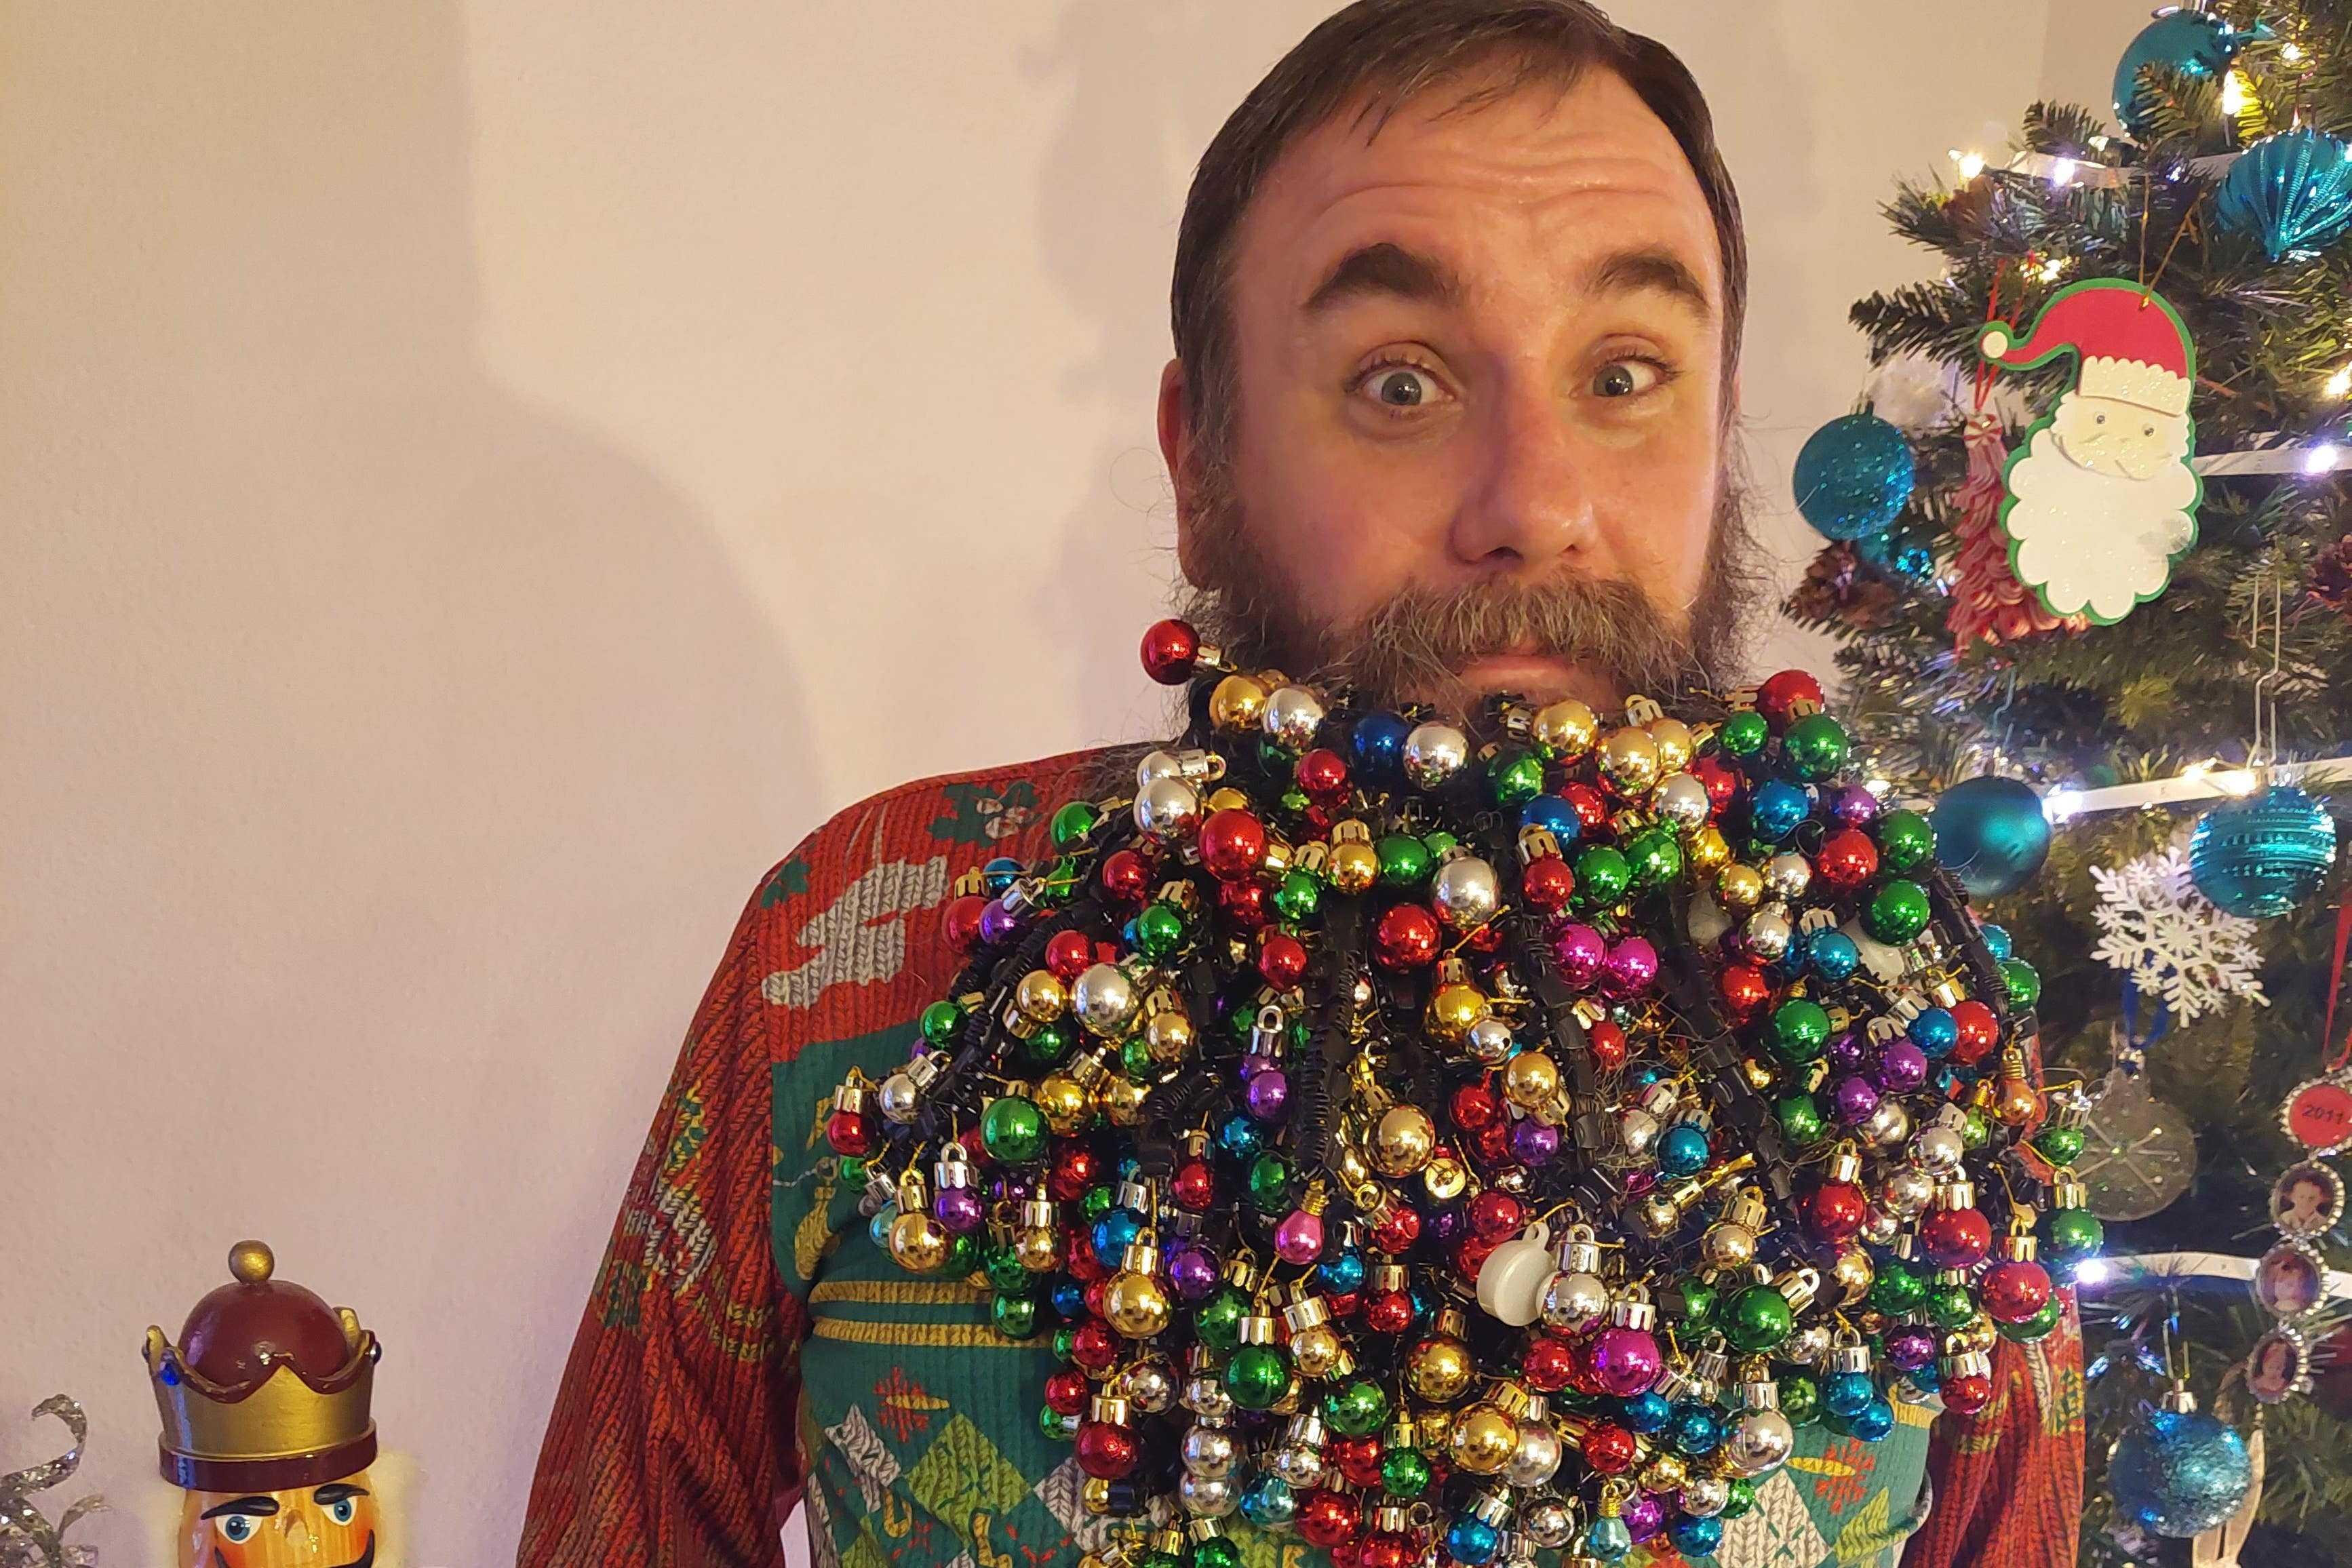 Ovo je čovjek s najviše božićnih ukrasa u bradi čak 710 kuglica